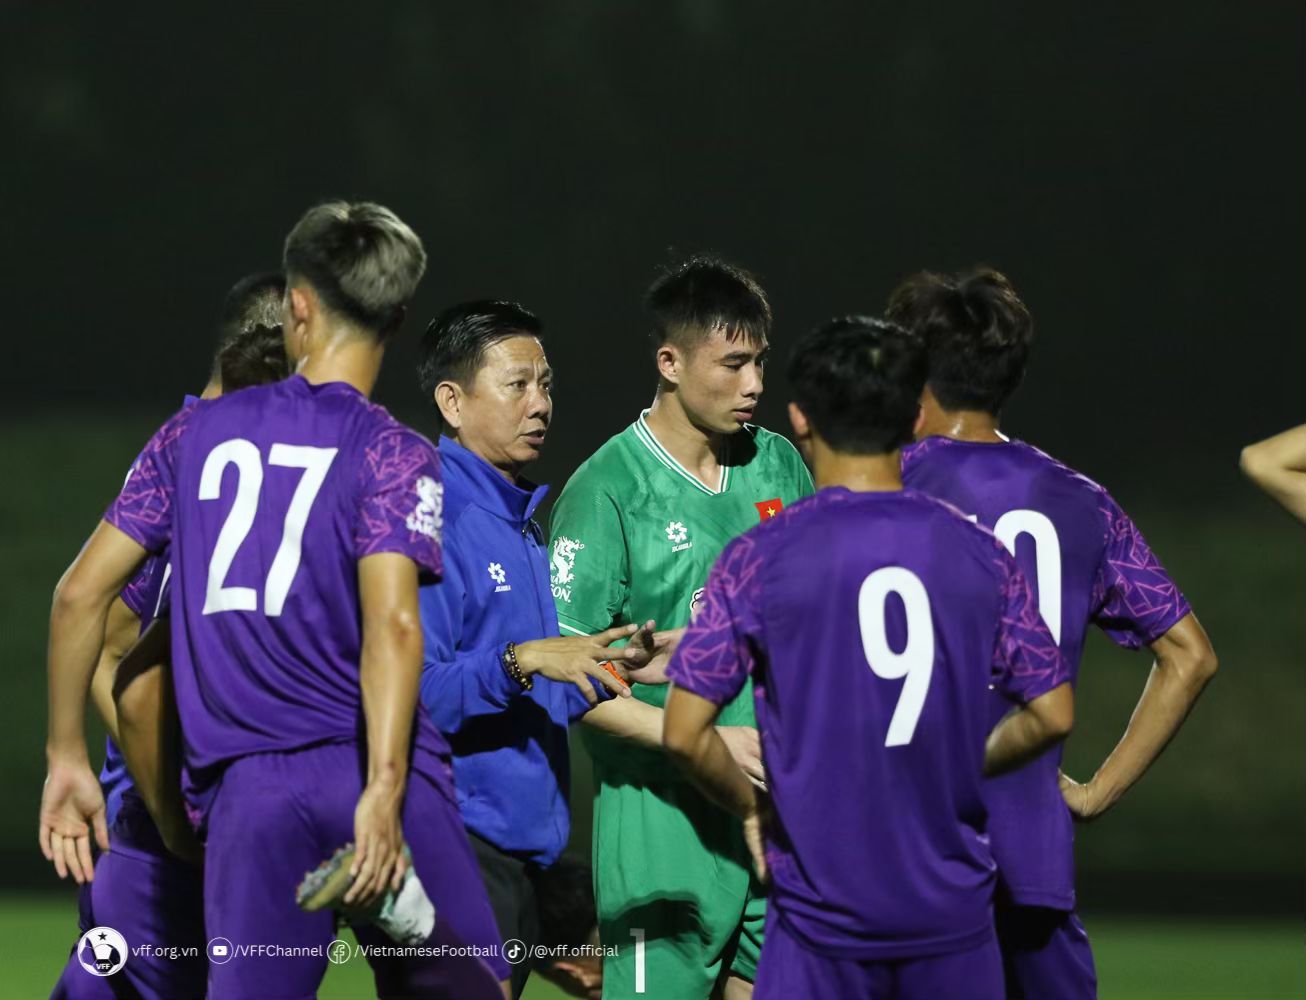 Huấn luyện viên Hoàng Anh Tuấn có bài kiểm tra quan trọng với các cầu thủ. Ảnh: VFF